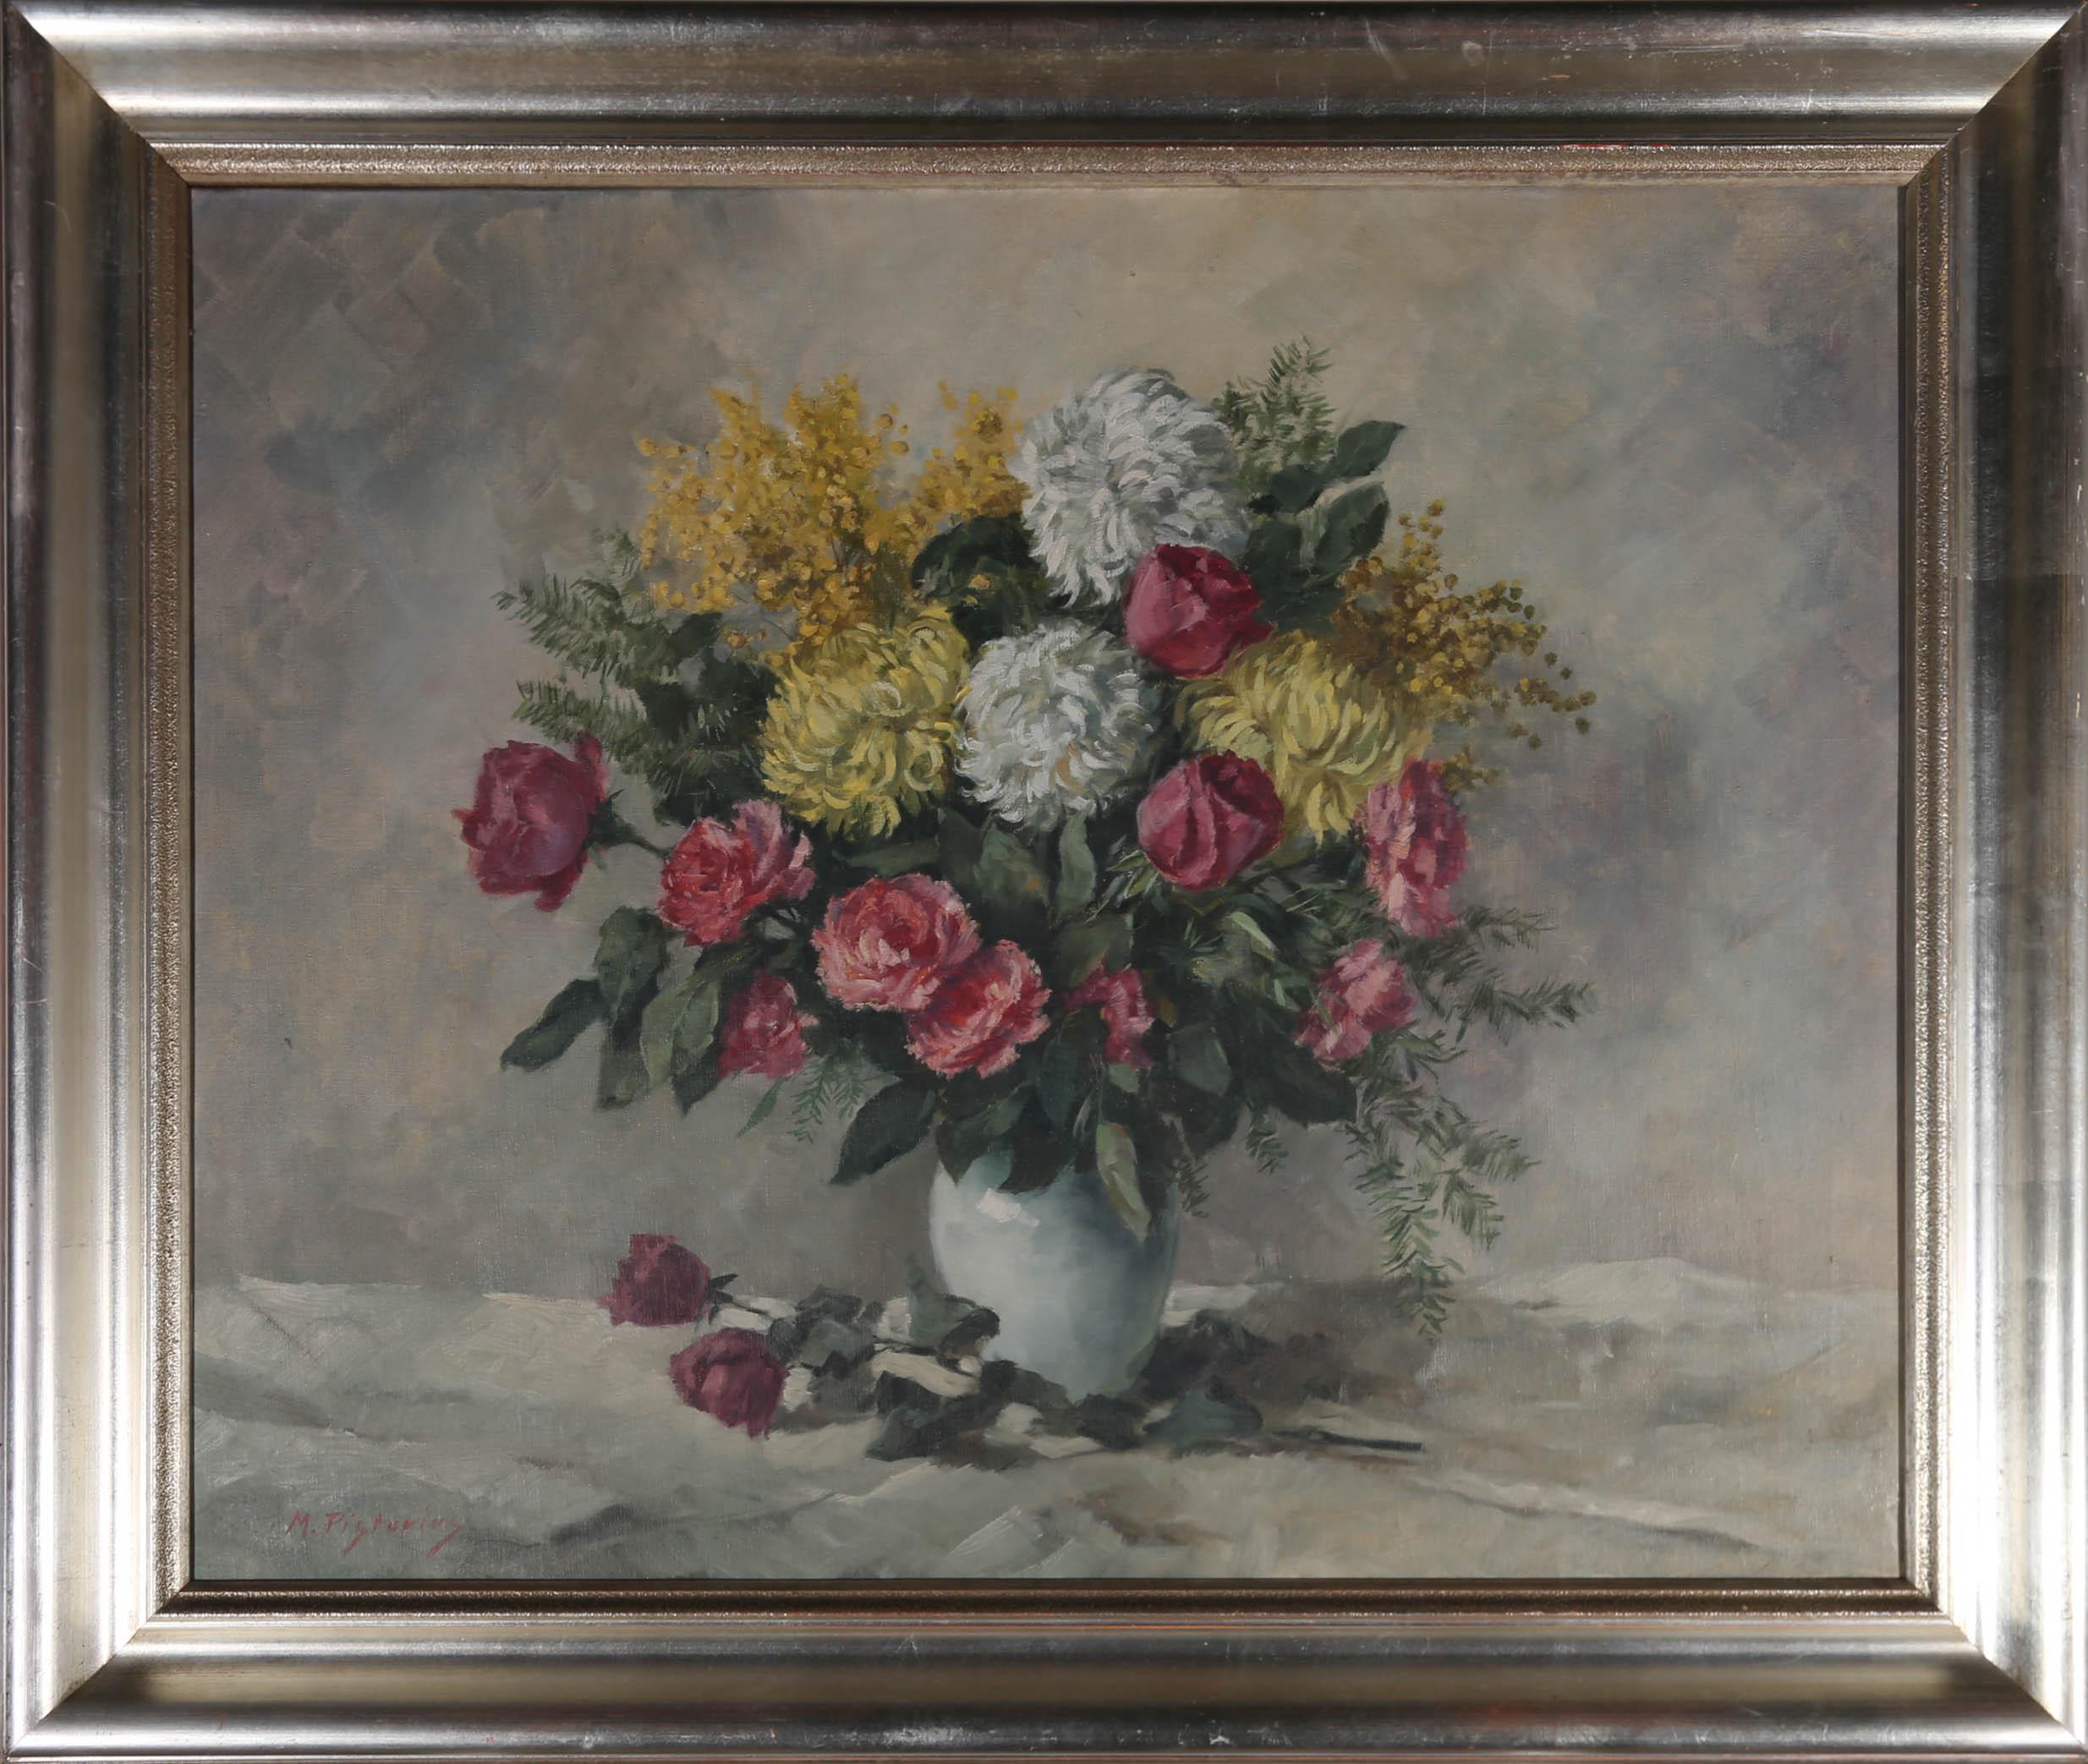 Une charmante nature morte florale vers 1940-1950, montrant un vase de chrysanthèmes, de roses, de sapin et de mimosa. L'artiste a signé dans le coin inférieur gauche et le tableau est présenté dans un important cadre en vermeil. Sur toile.
